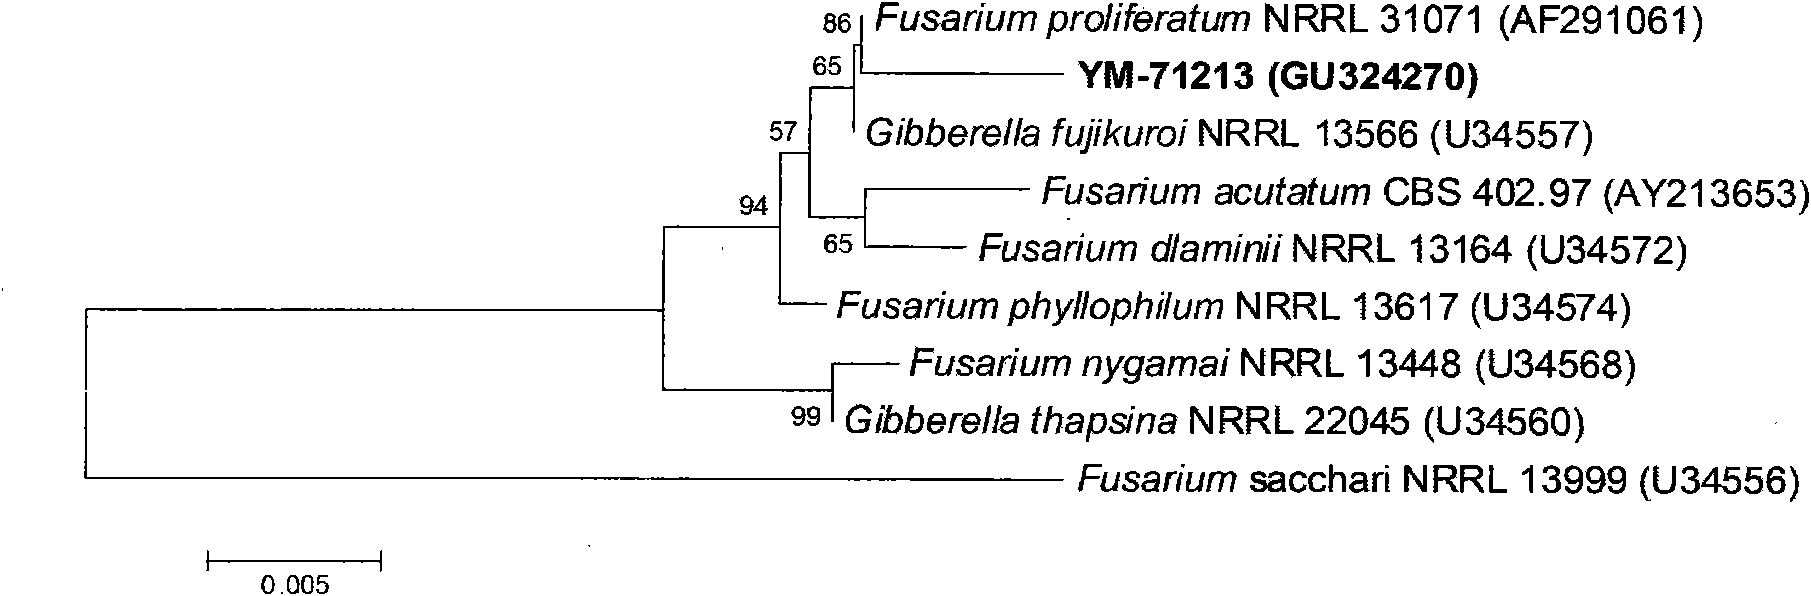 Fusarium prolifertum